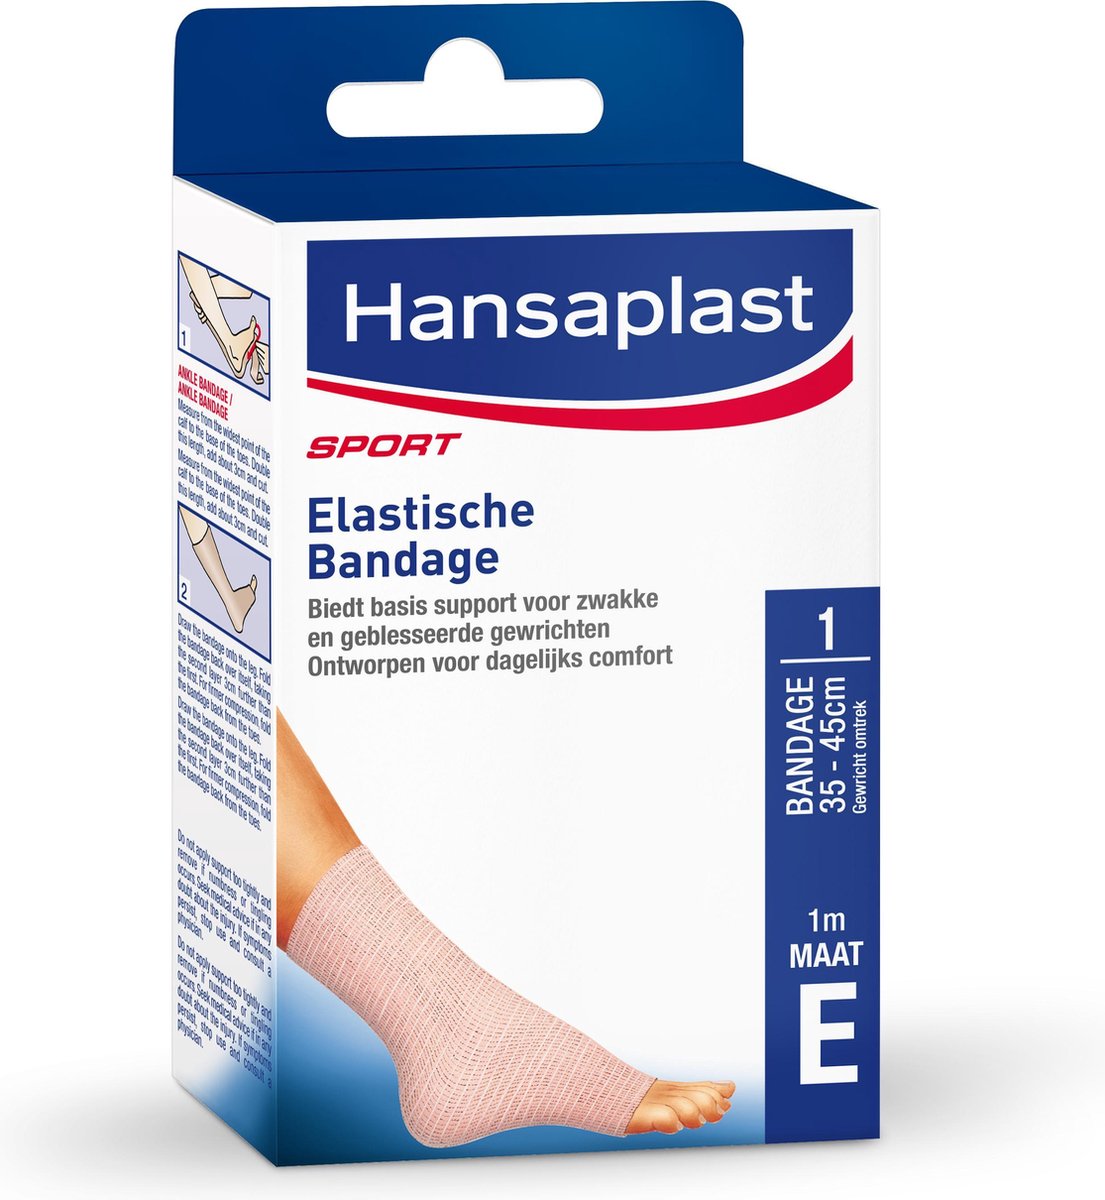 Tenen touw overstroming Hansaplast Sport Elastische Bandage 1m maat E (enkel/knie) | bol.com